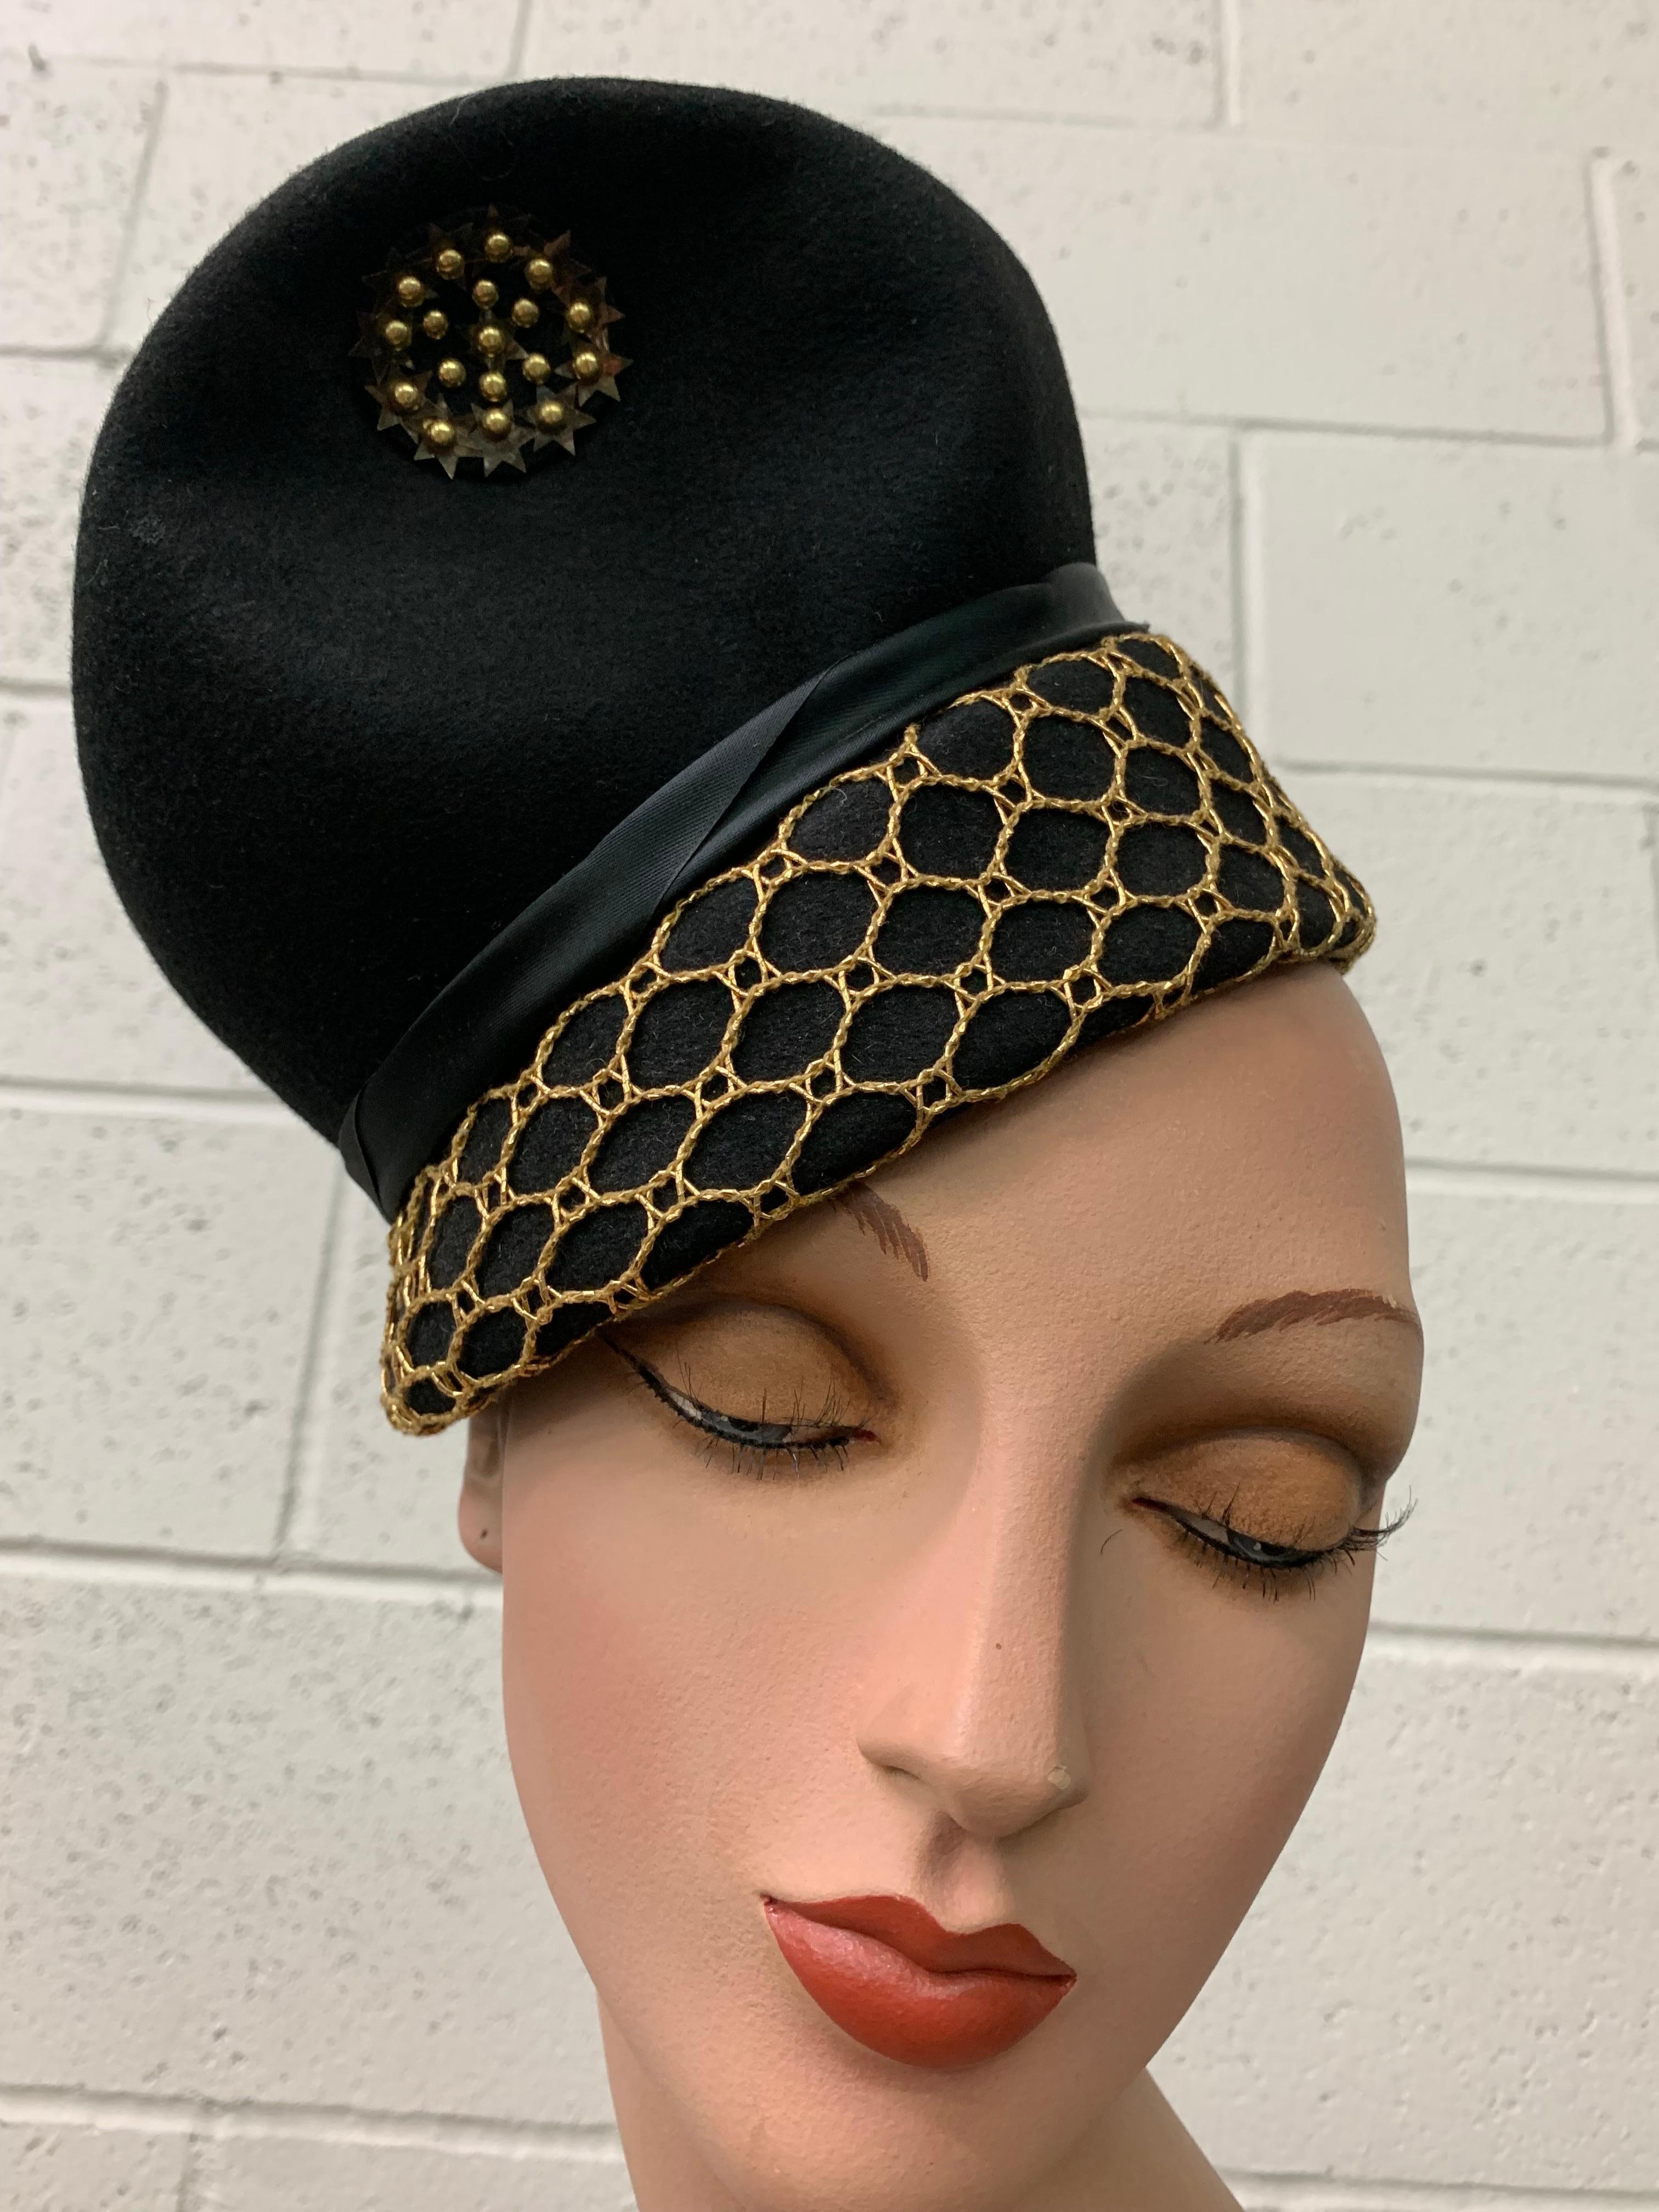 Chapeau surréaliste en feutre noir des années 1940 avec filet doré, médaillon en paillettes et nœud en soie noire. L'élastique au dos permet d'ancrer la coiffure. Taille unique, ajustable. 